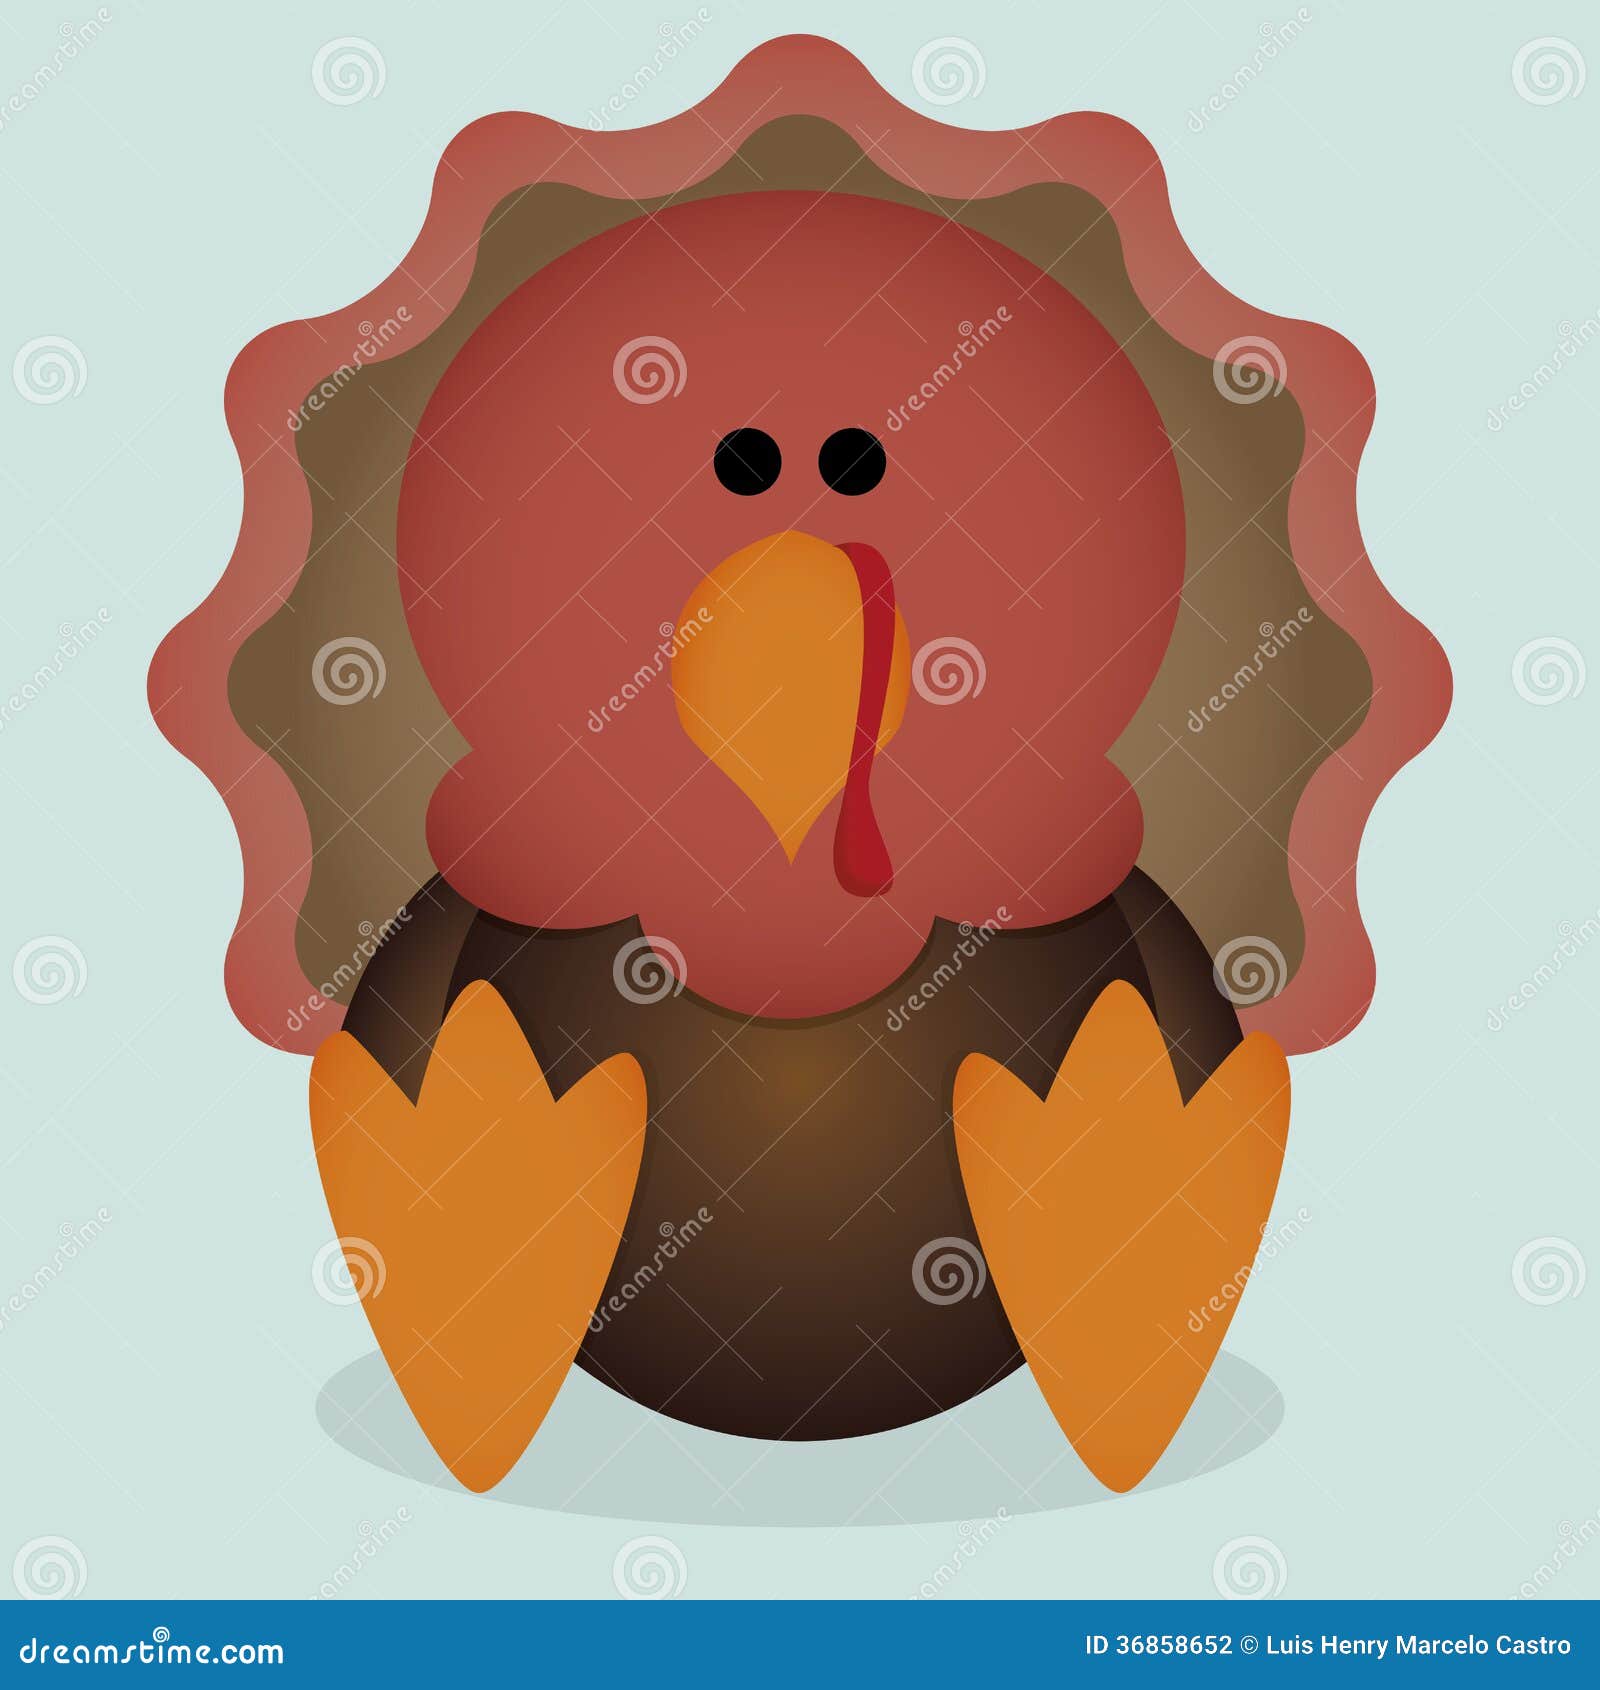 Vector Cartoon Cute Little Turkey Sitting Isolated Stock Illustration ...